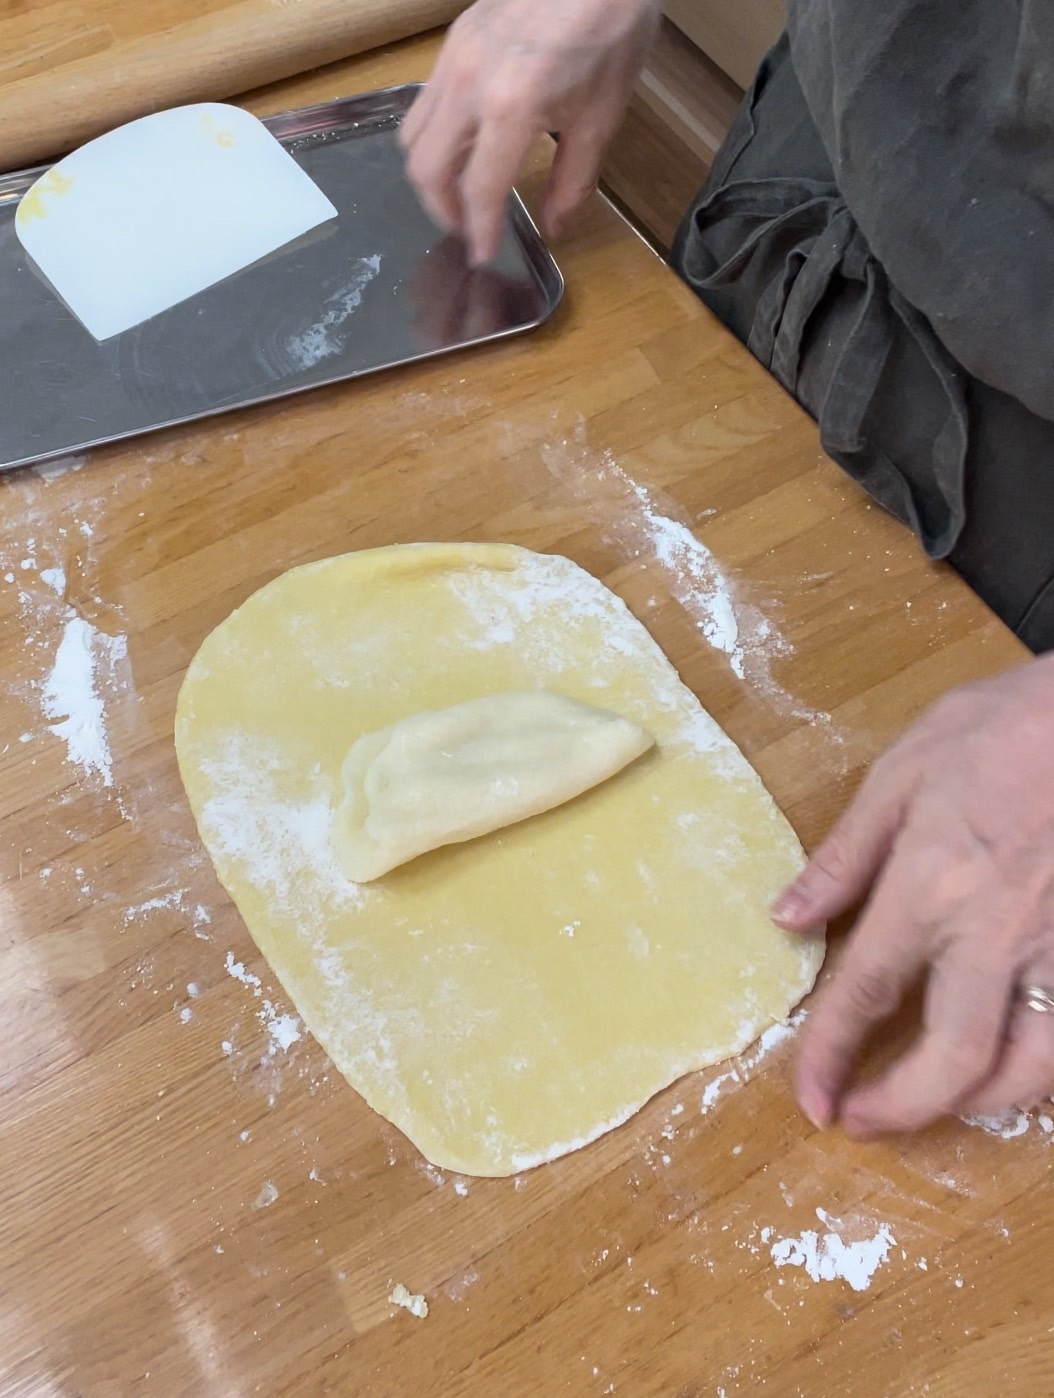 打ち粉し、木の麺棒で長方形に伸ばしバター風フィリングをのせて包み折り込み作業をする。